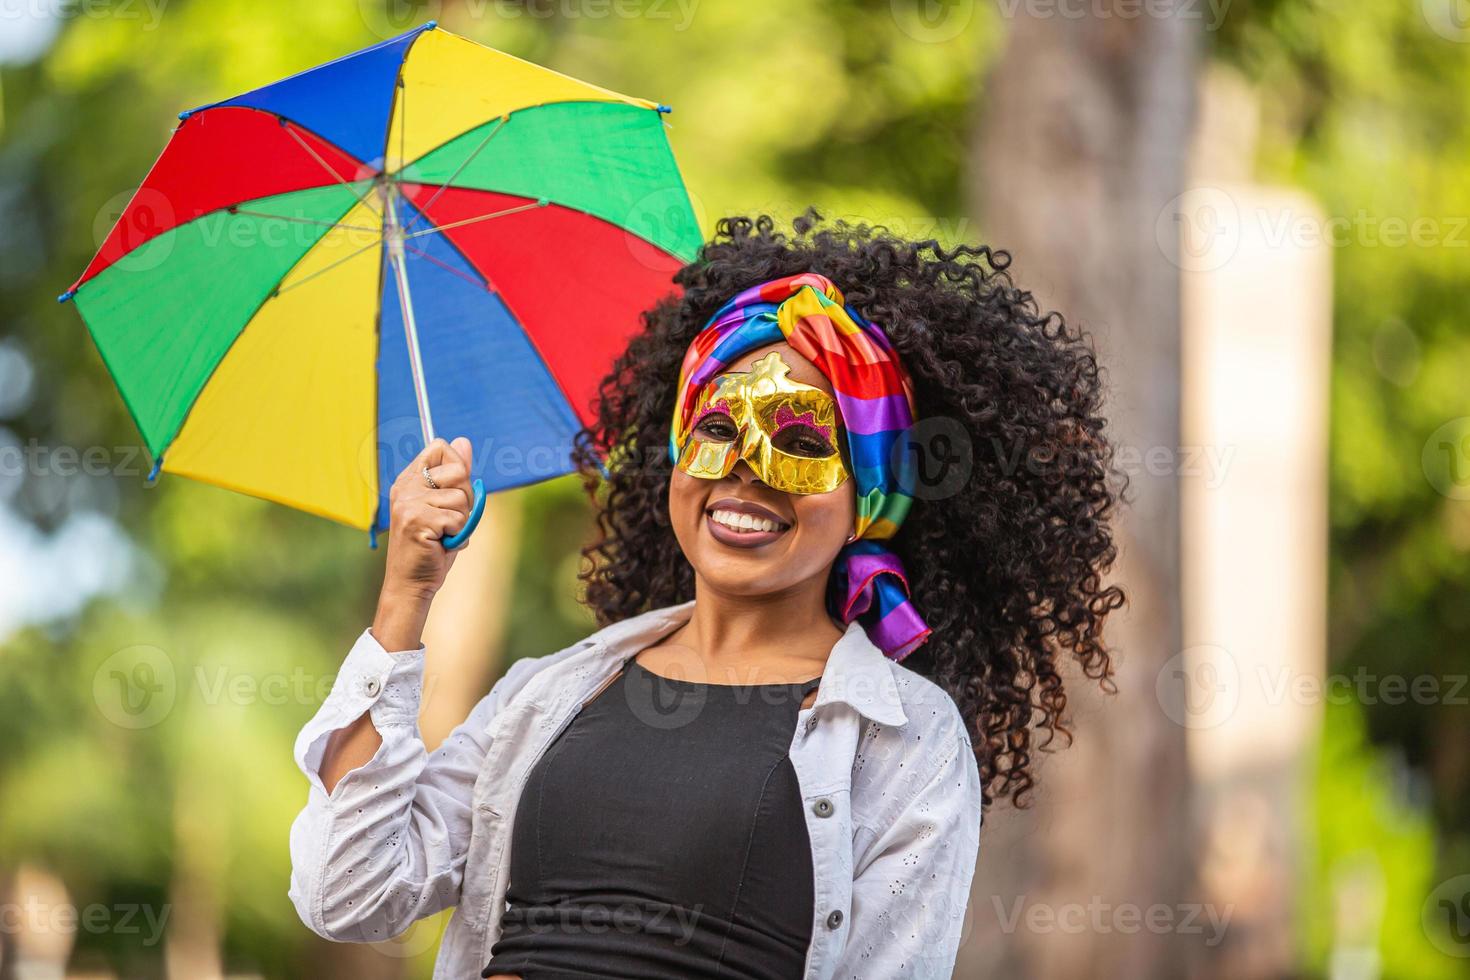 mujer joven de pelo rizado celebrando la fiesta del carnaval brasileño con paraguas frevo en la calle. foto